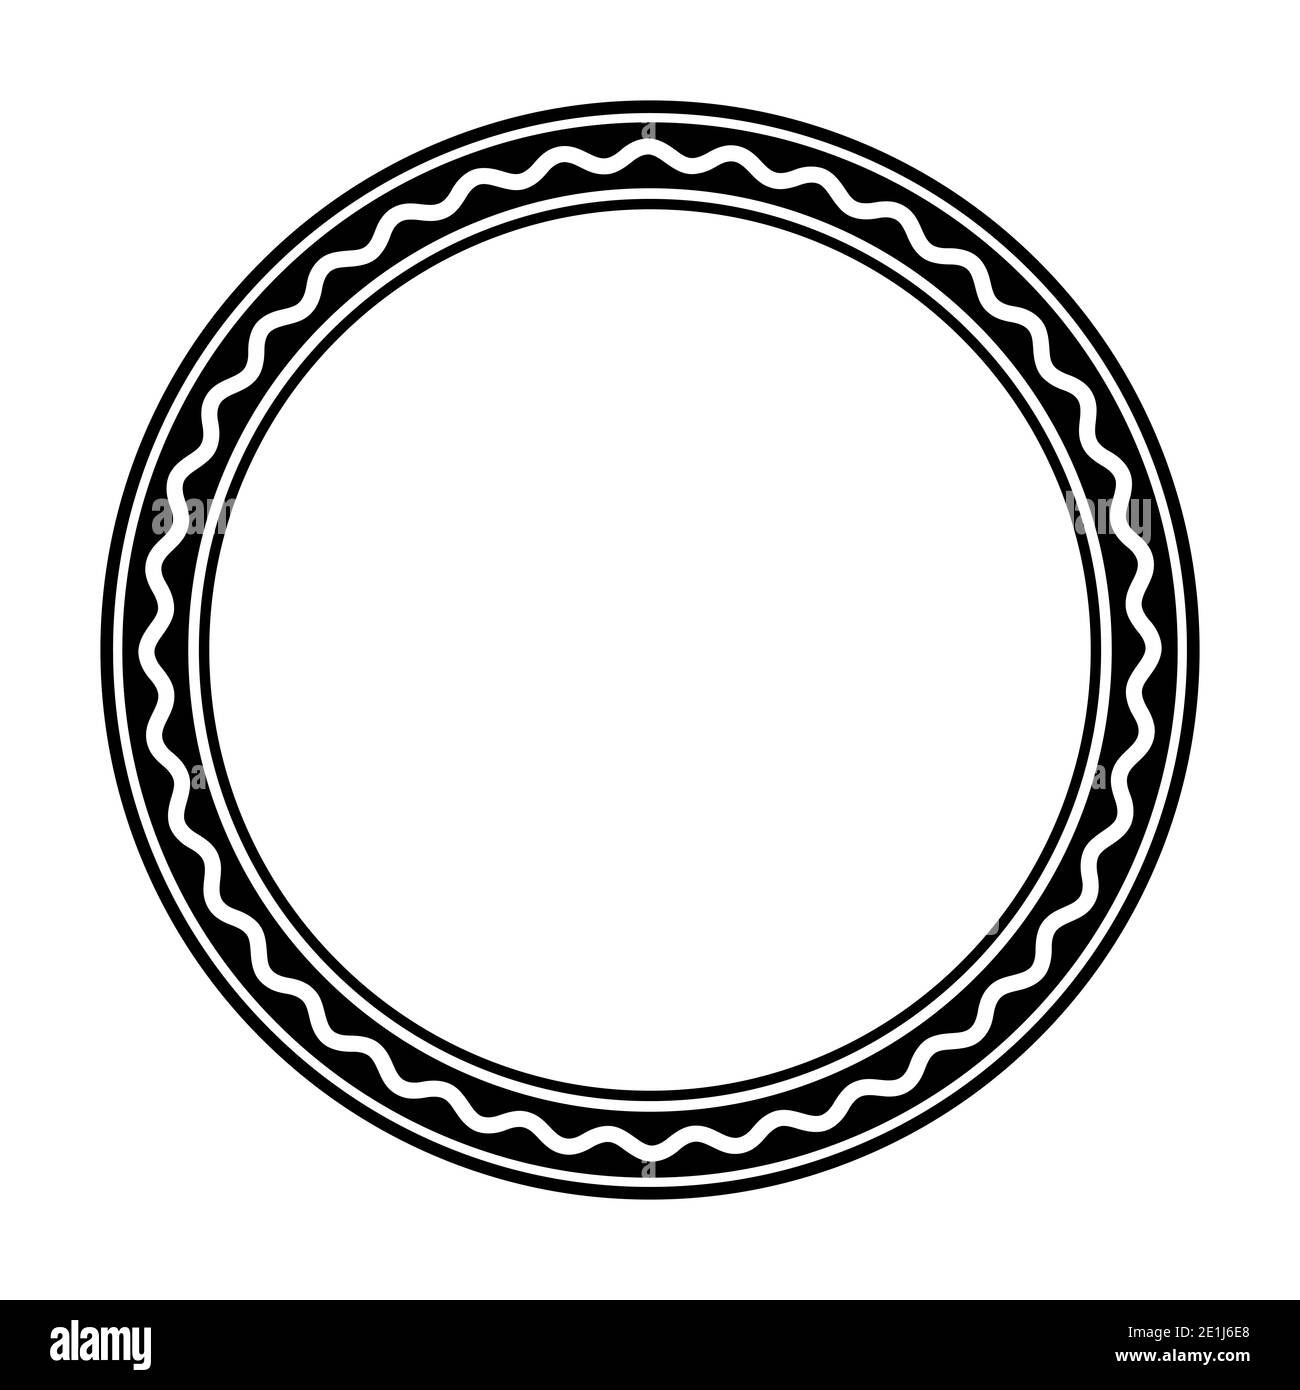 Schwarzer Kreisrahmen mit einer kräftigen weißen Wellenlinie. Kreisrahmen aus drei Kreisen und einer Serpentinenlinie. Ein runder Rahmen und dekorativer Rahmen. Stockfoto